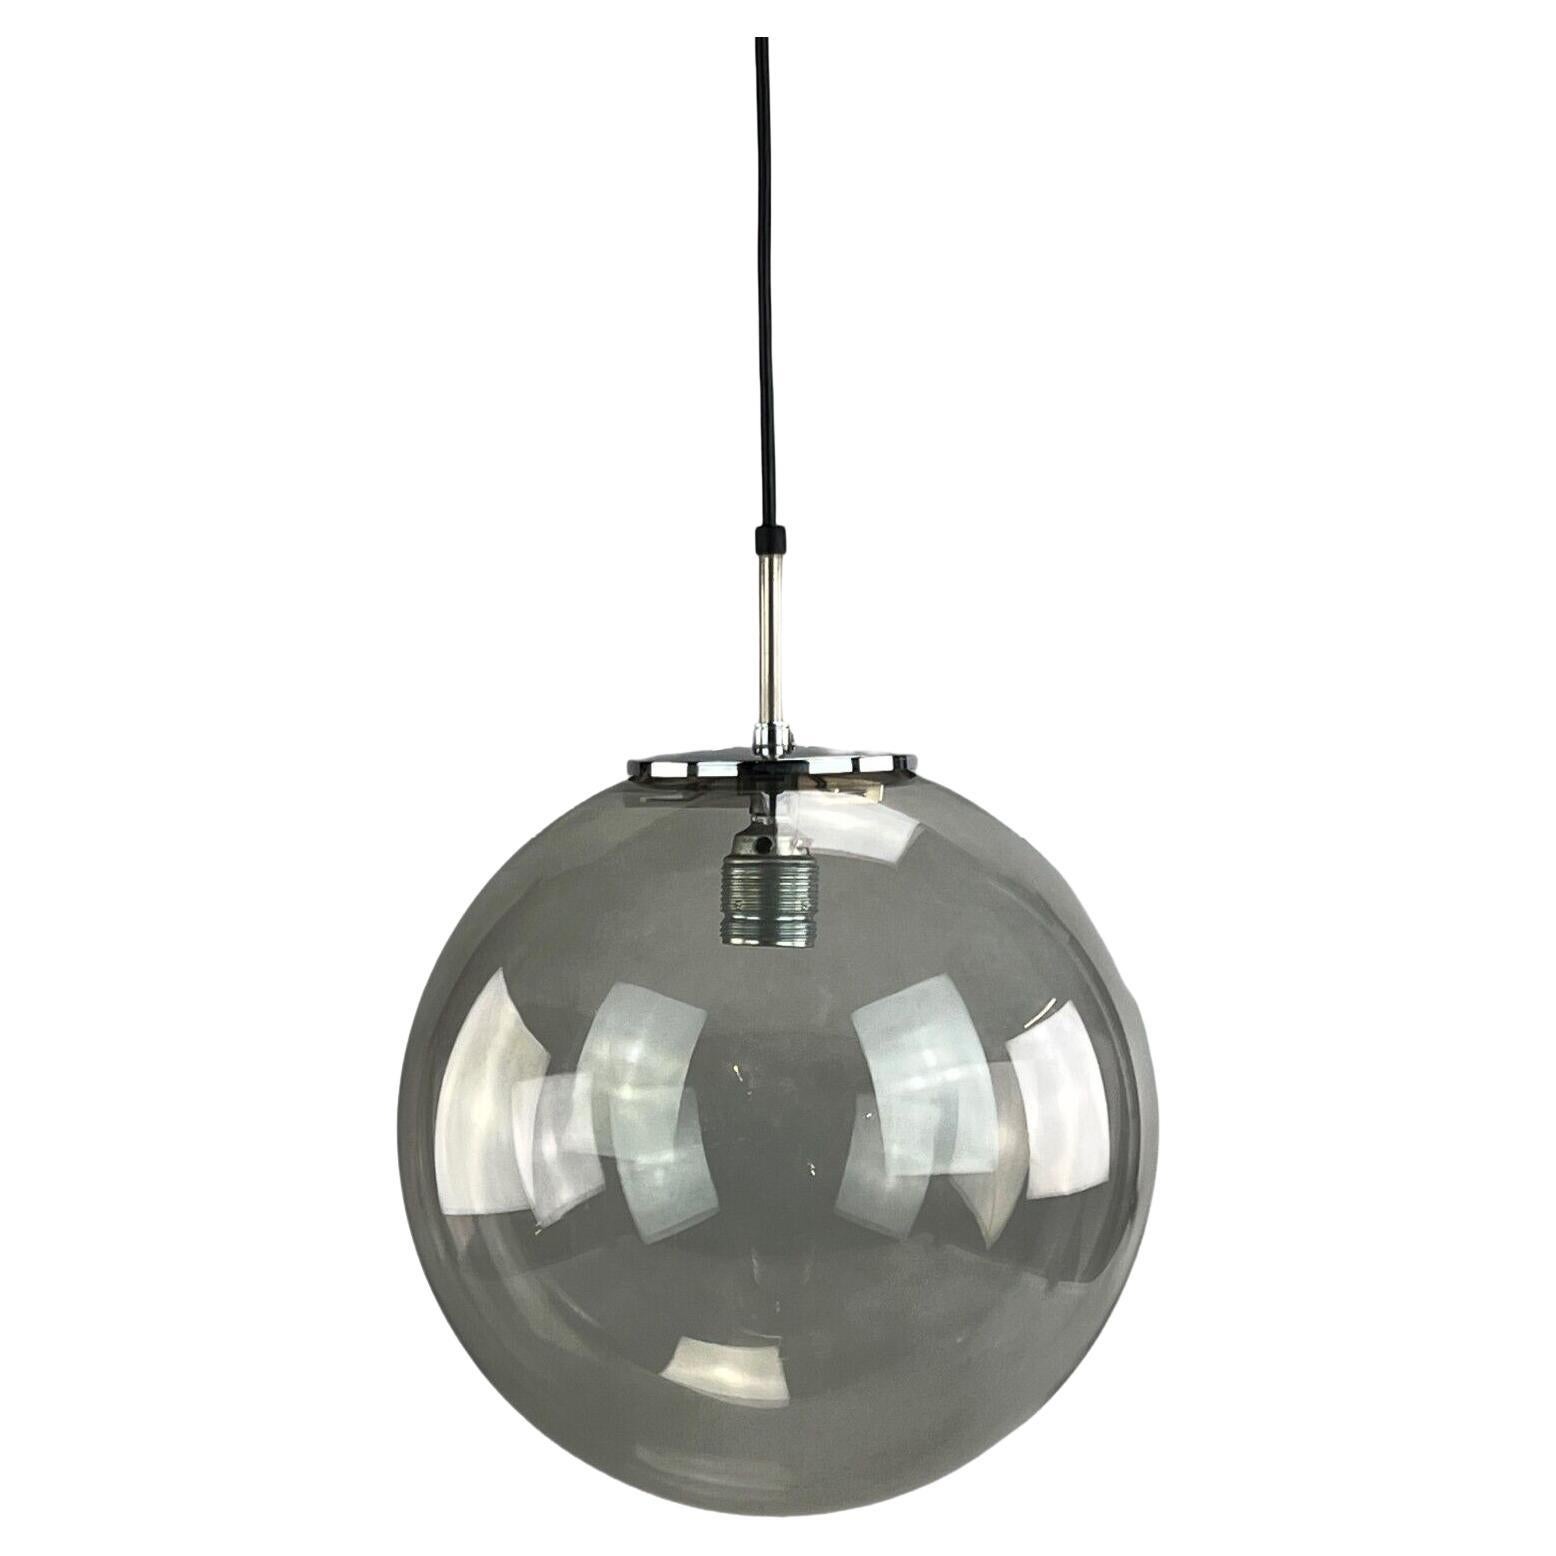 1960s-1970s Lamp Ceiling Lamp Limburg "Globe" Spherical Lamp Ball Lamp Design For Sale